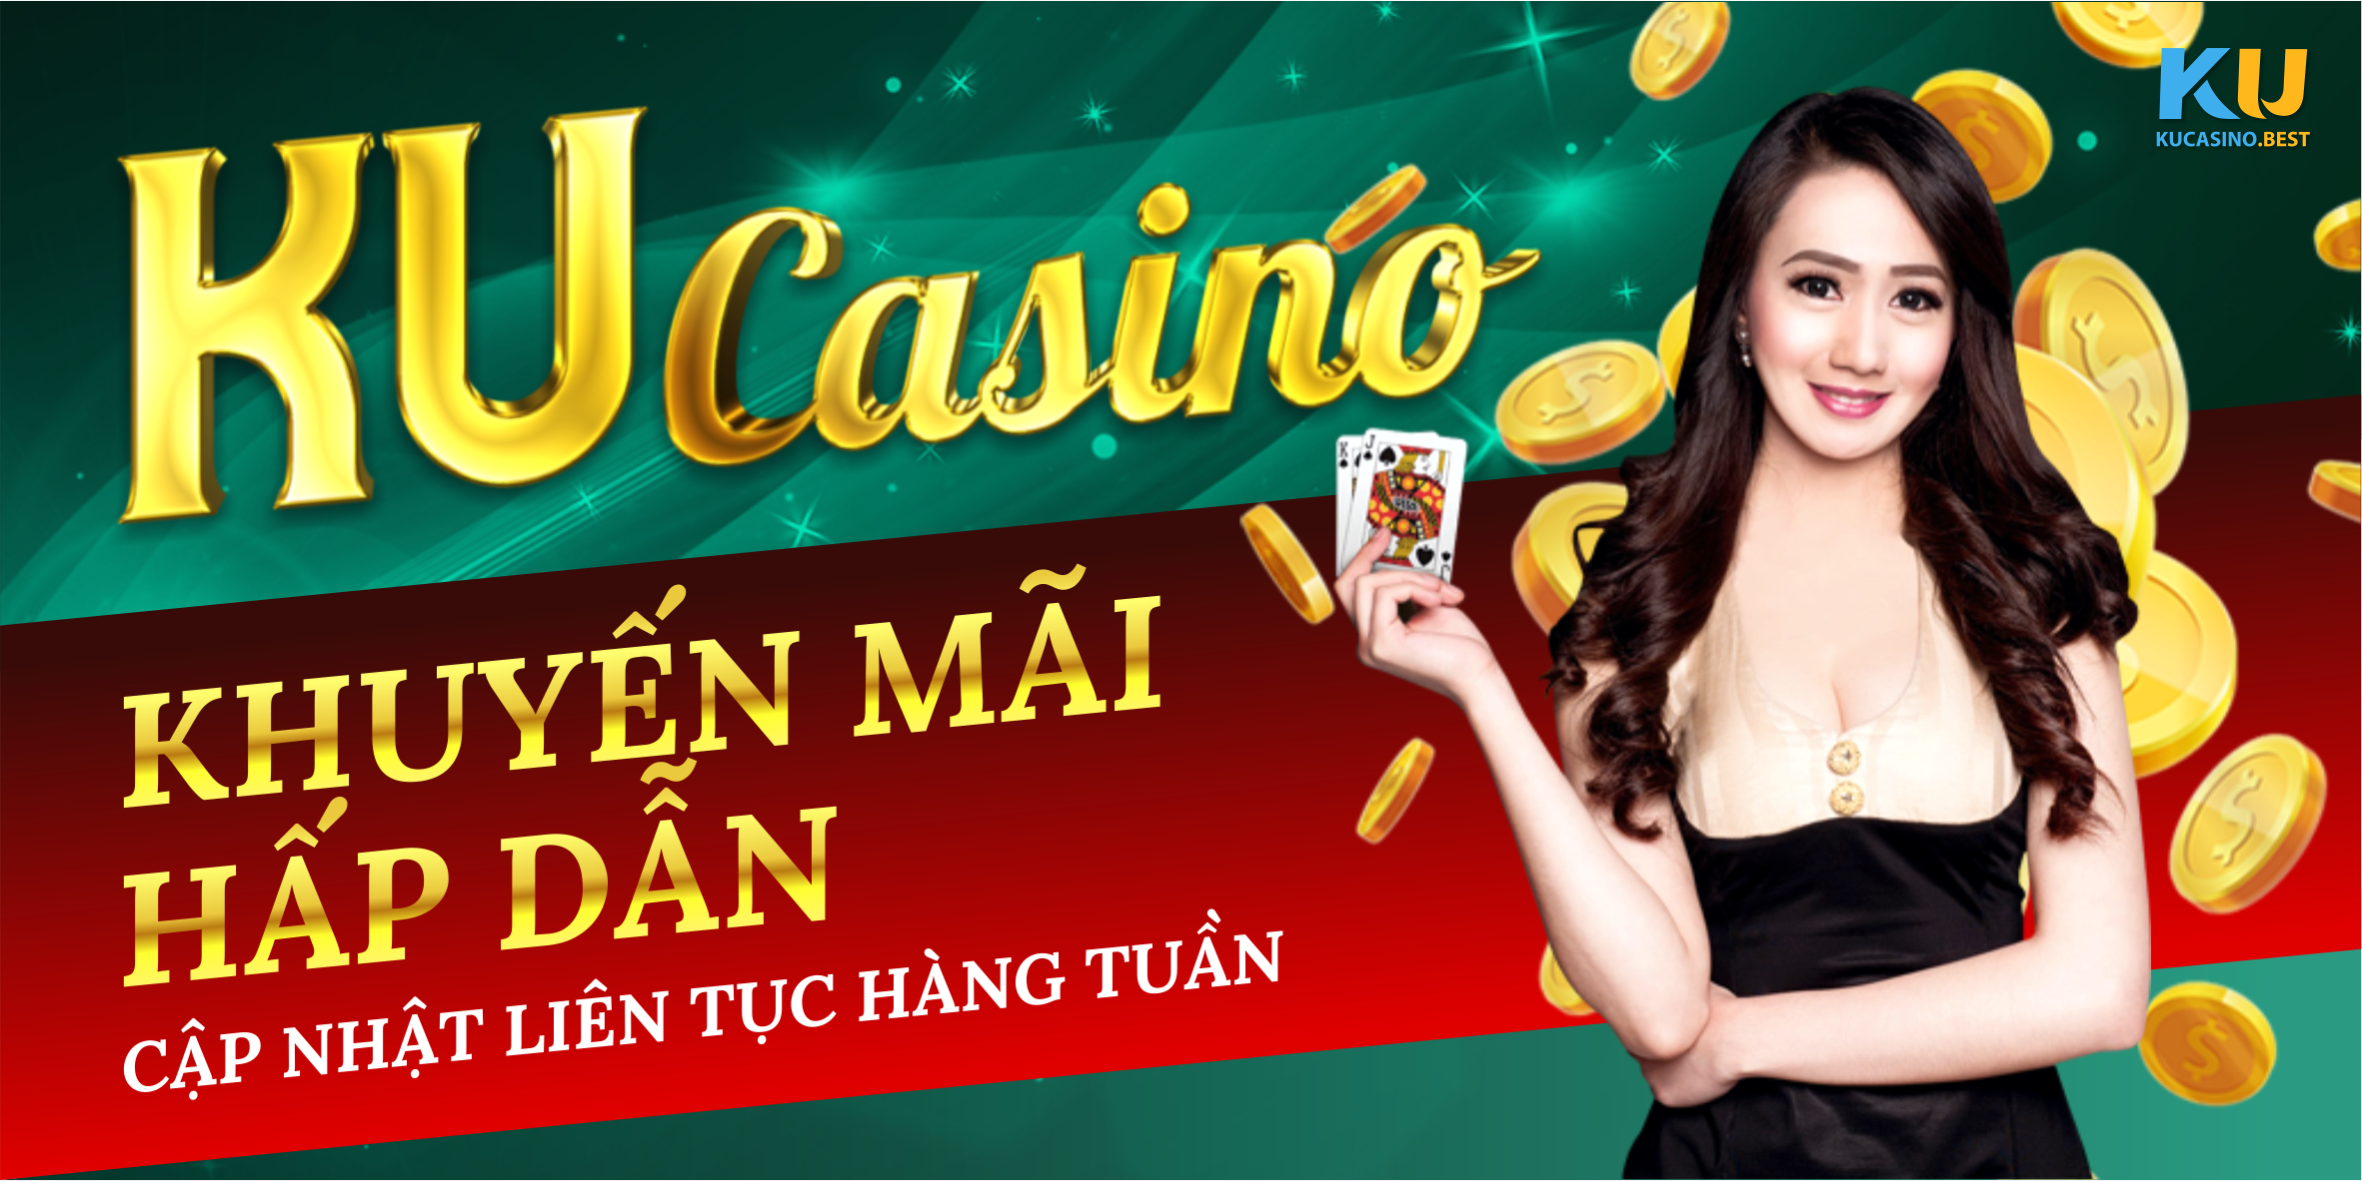 Khuyến mãi hấp dẫn tại Ku Casino, cập nhật liên tục hàng tuần